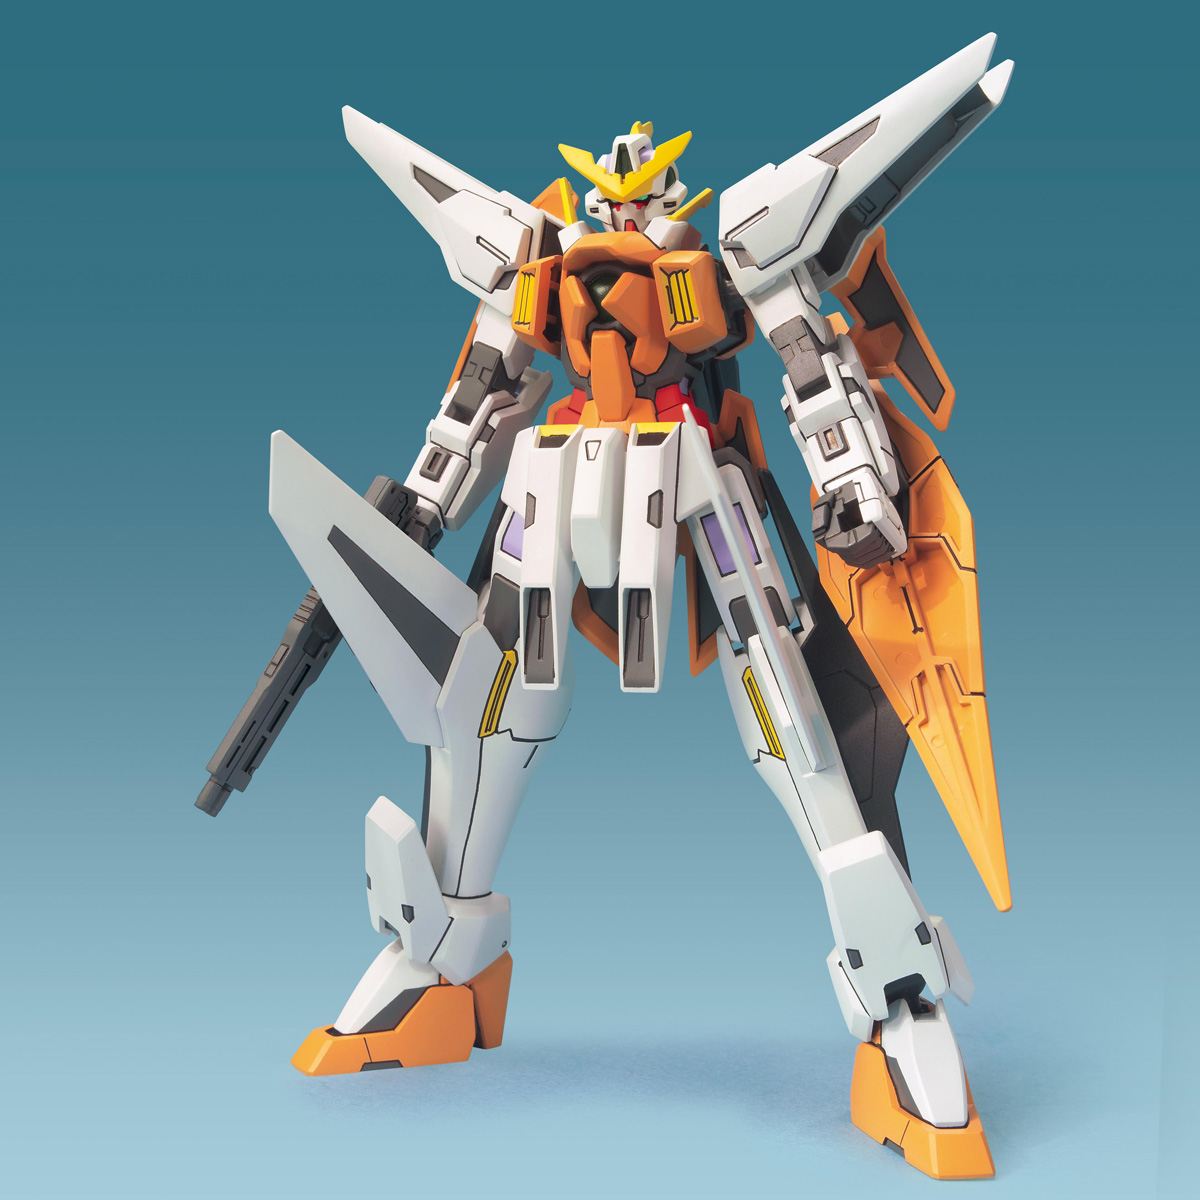 FG 1/144 GN-003 ガンダムキュリオス [Gundam Kyrios]